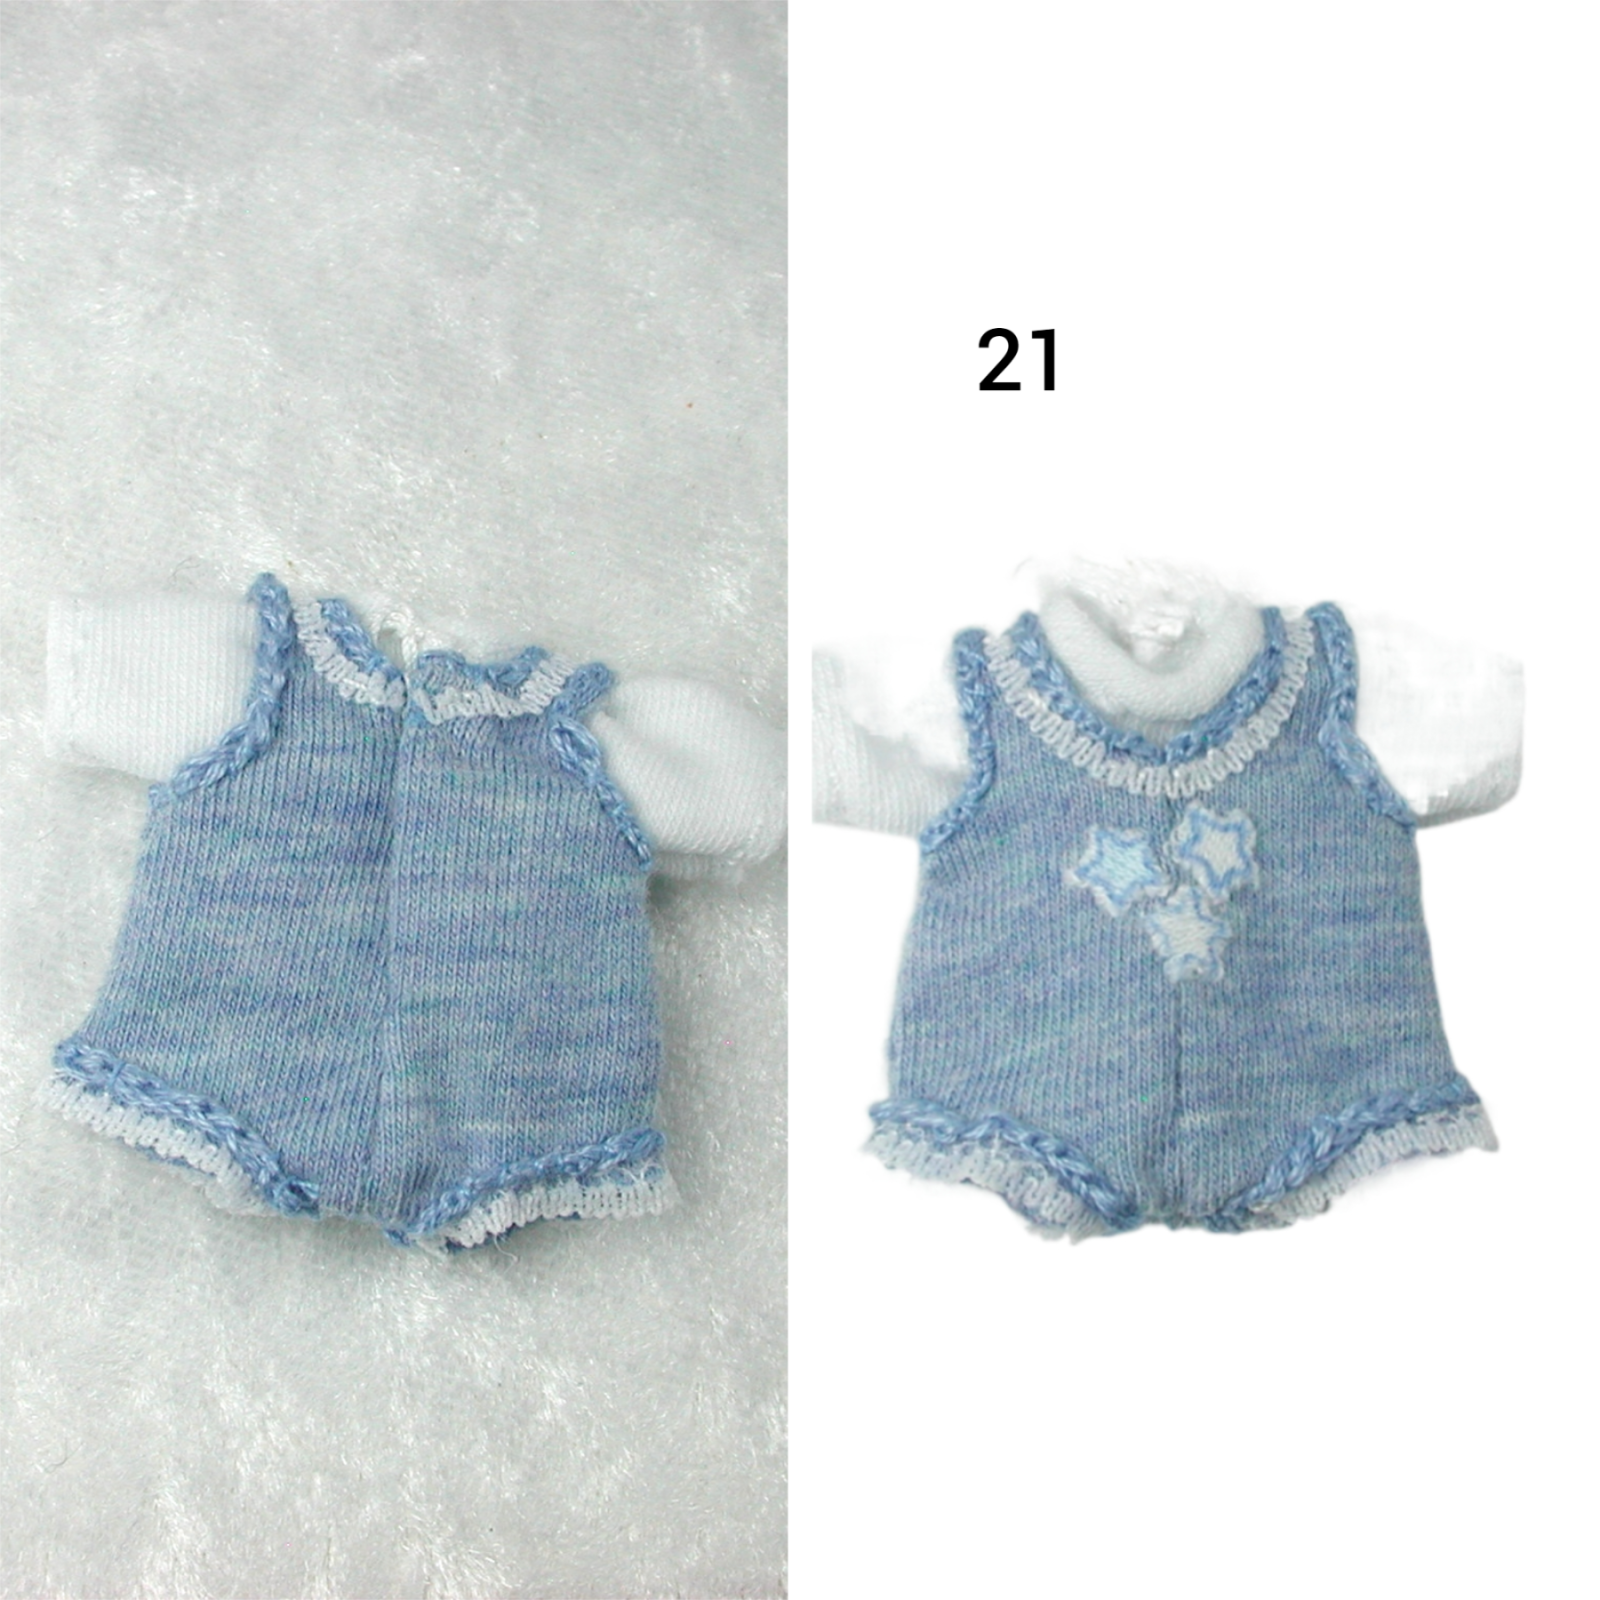 Body mit Hemdchen für das Baby Kleidung Maßstab 1:12 2